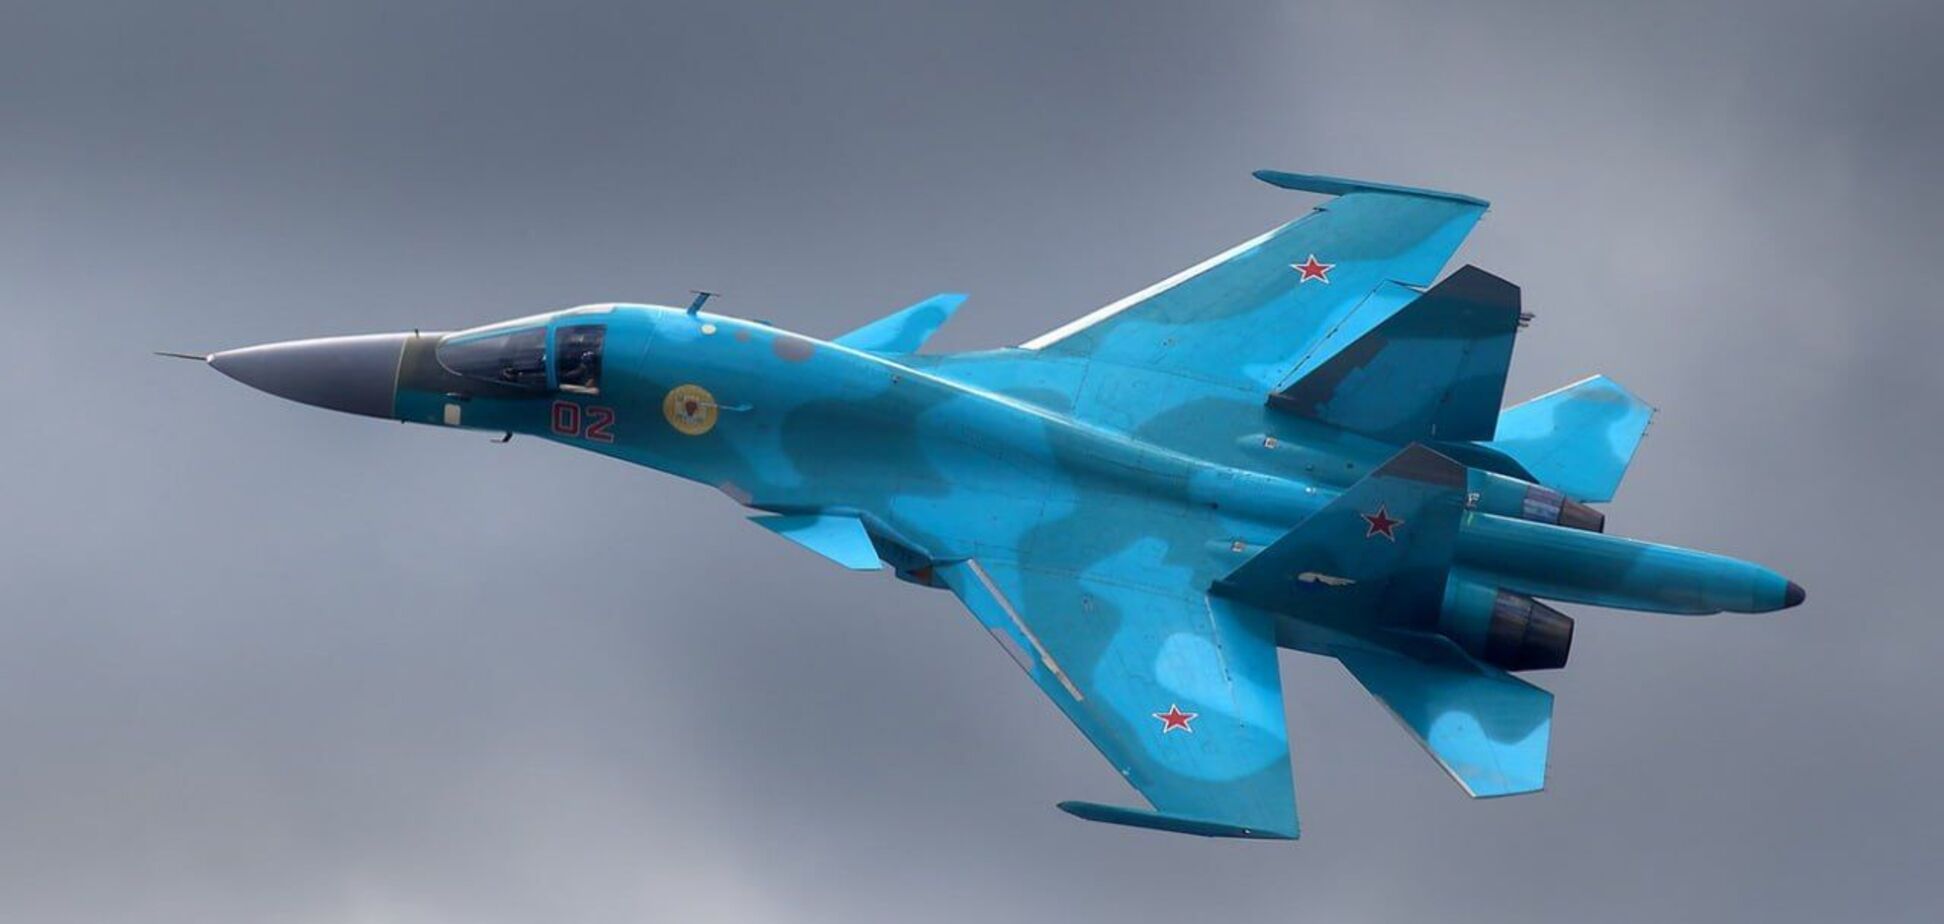  У Росії повідомляють про втрату літака Су-34 разом з екіпажем: що відомо